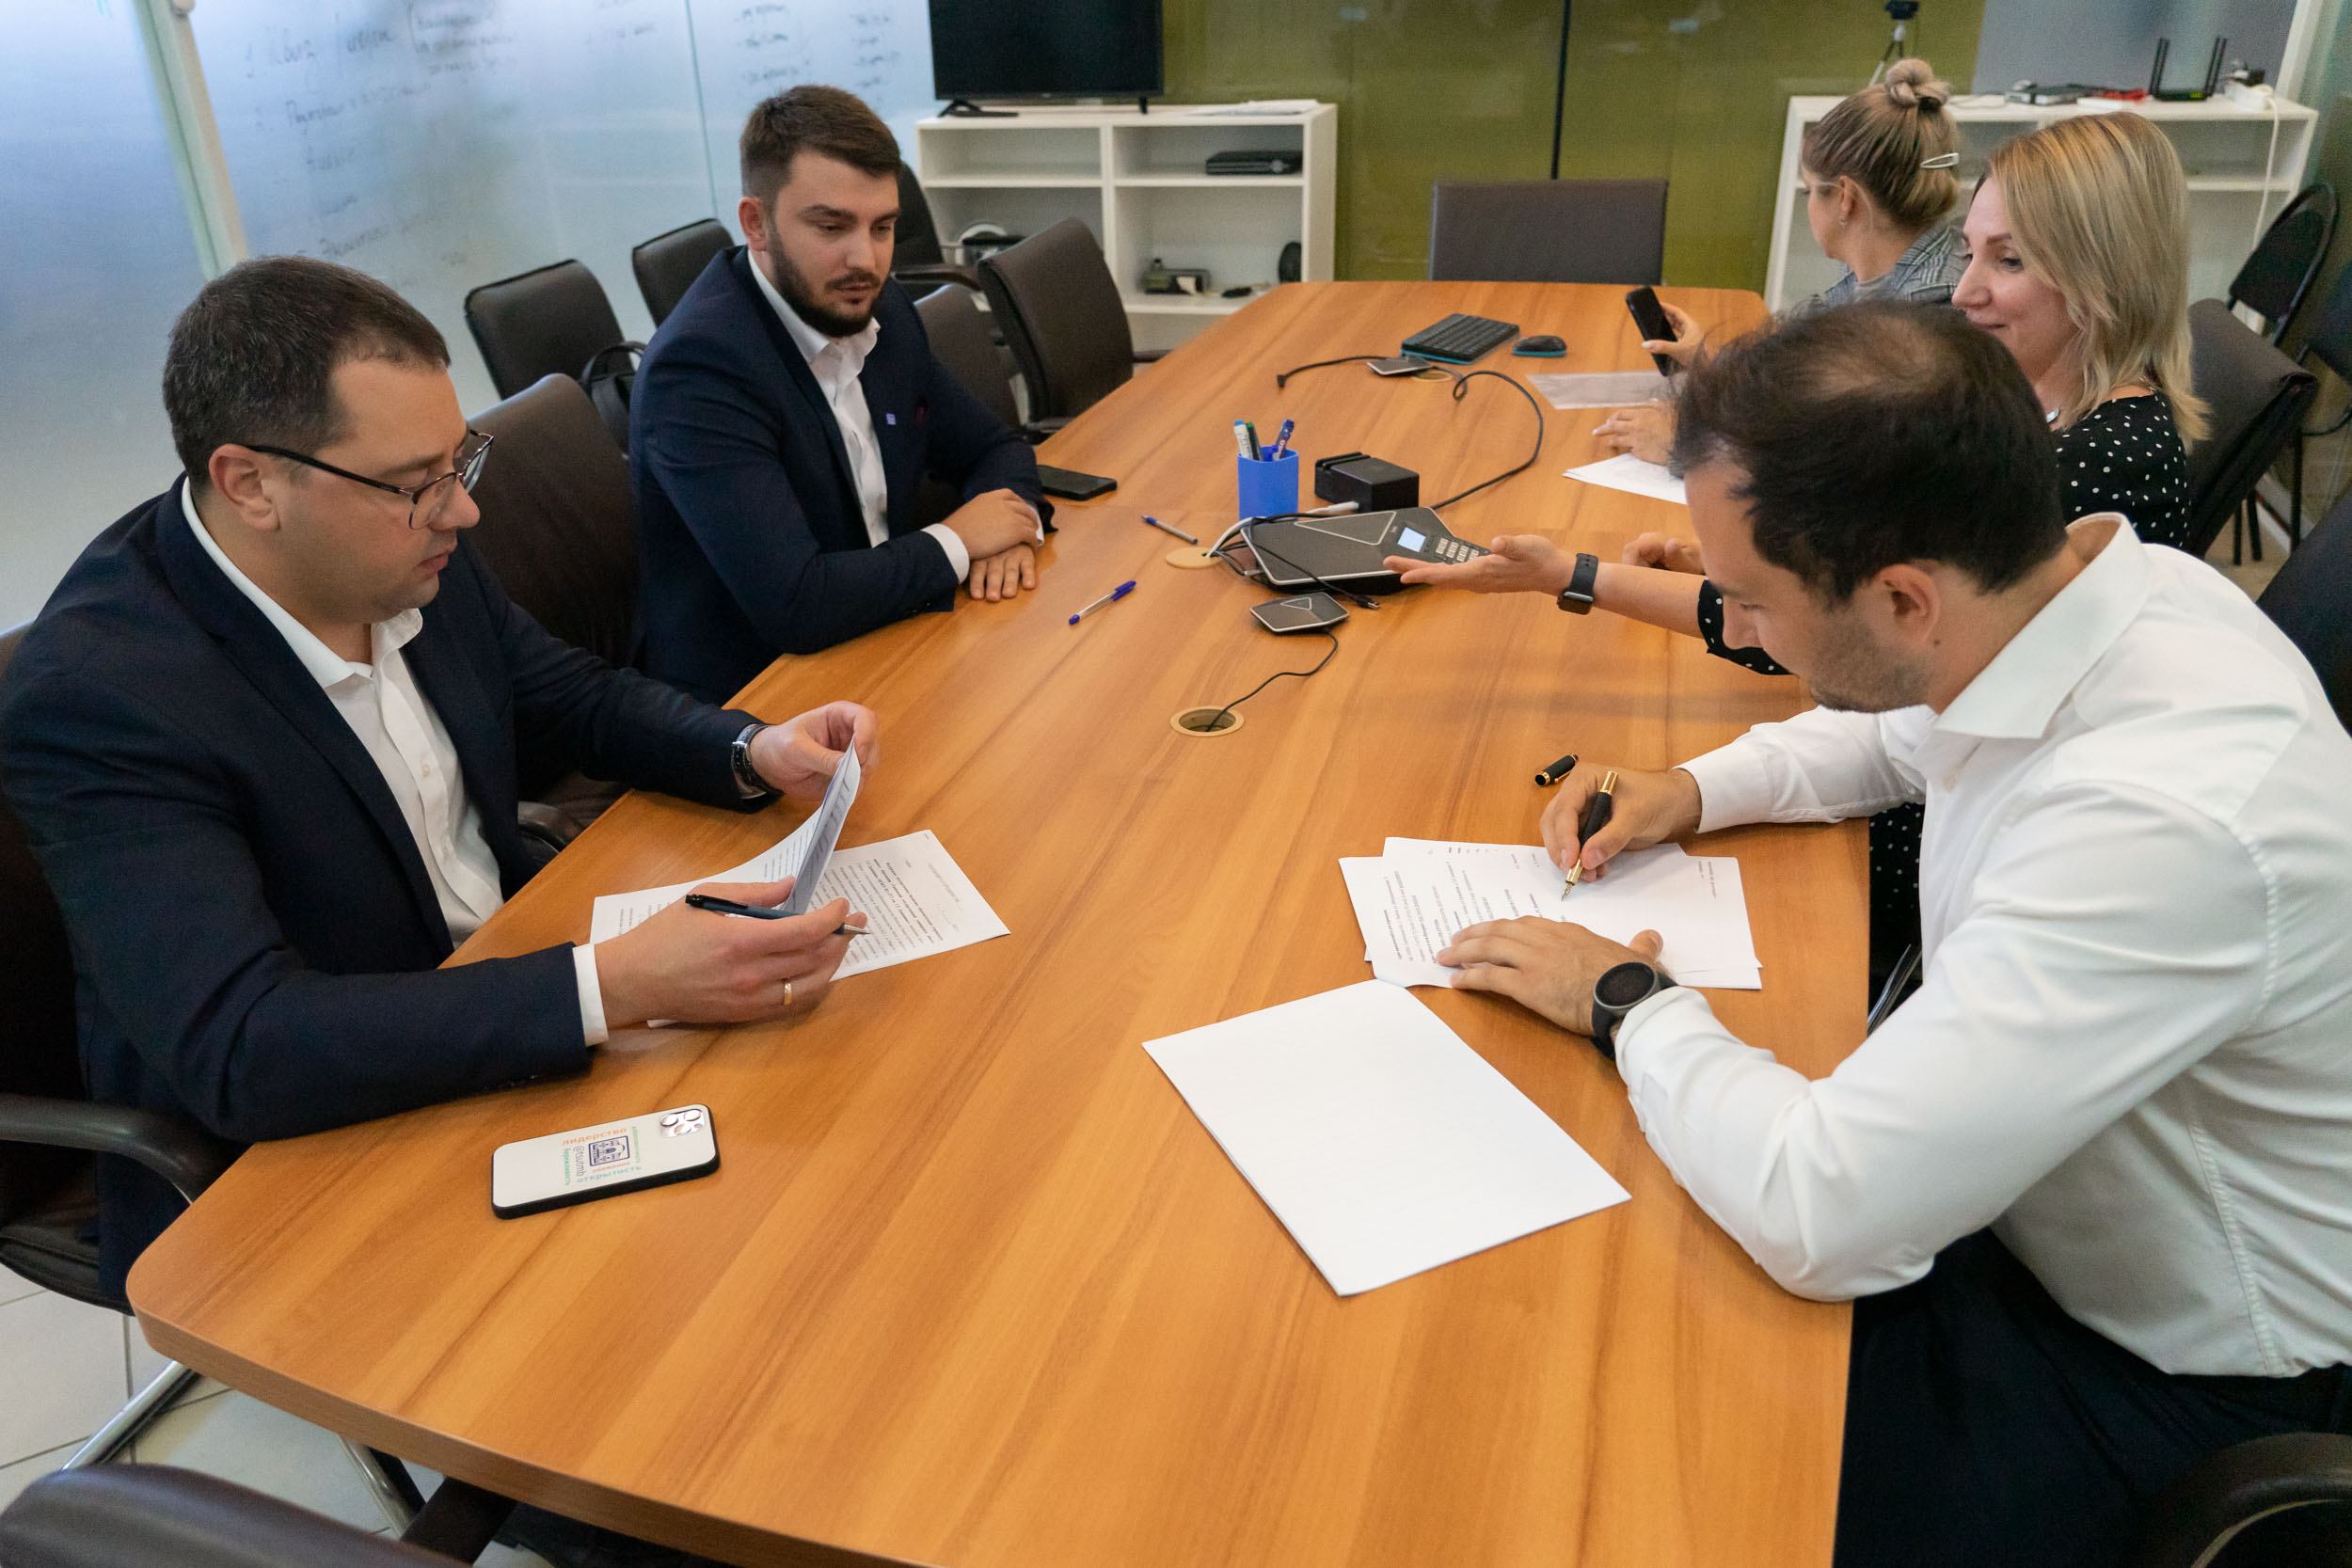 Державинский подписал соглашения о сотрудничестве с ведущими IT-компаниями региона фото анонса